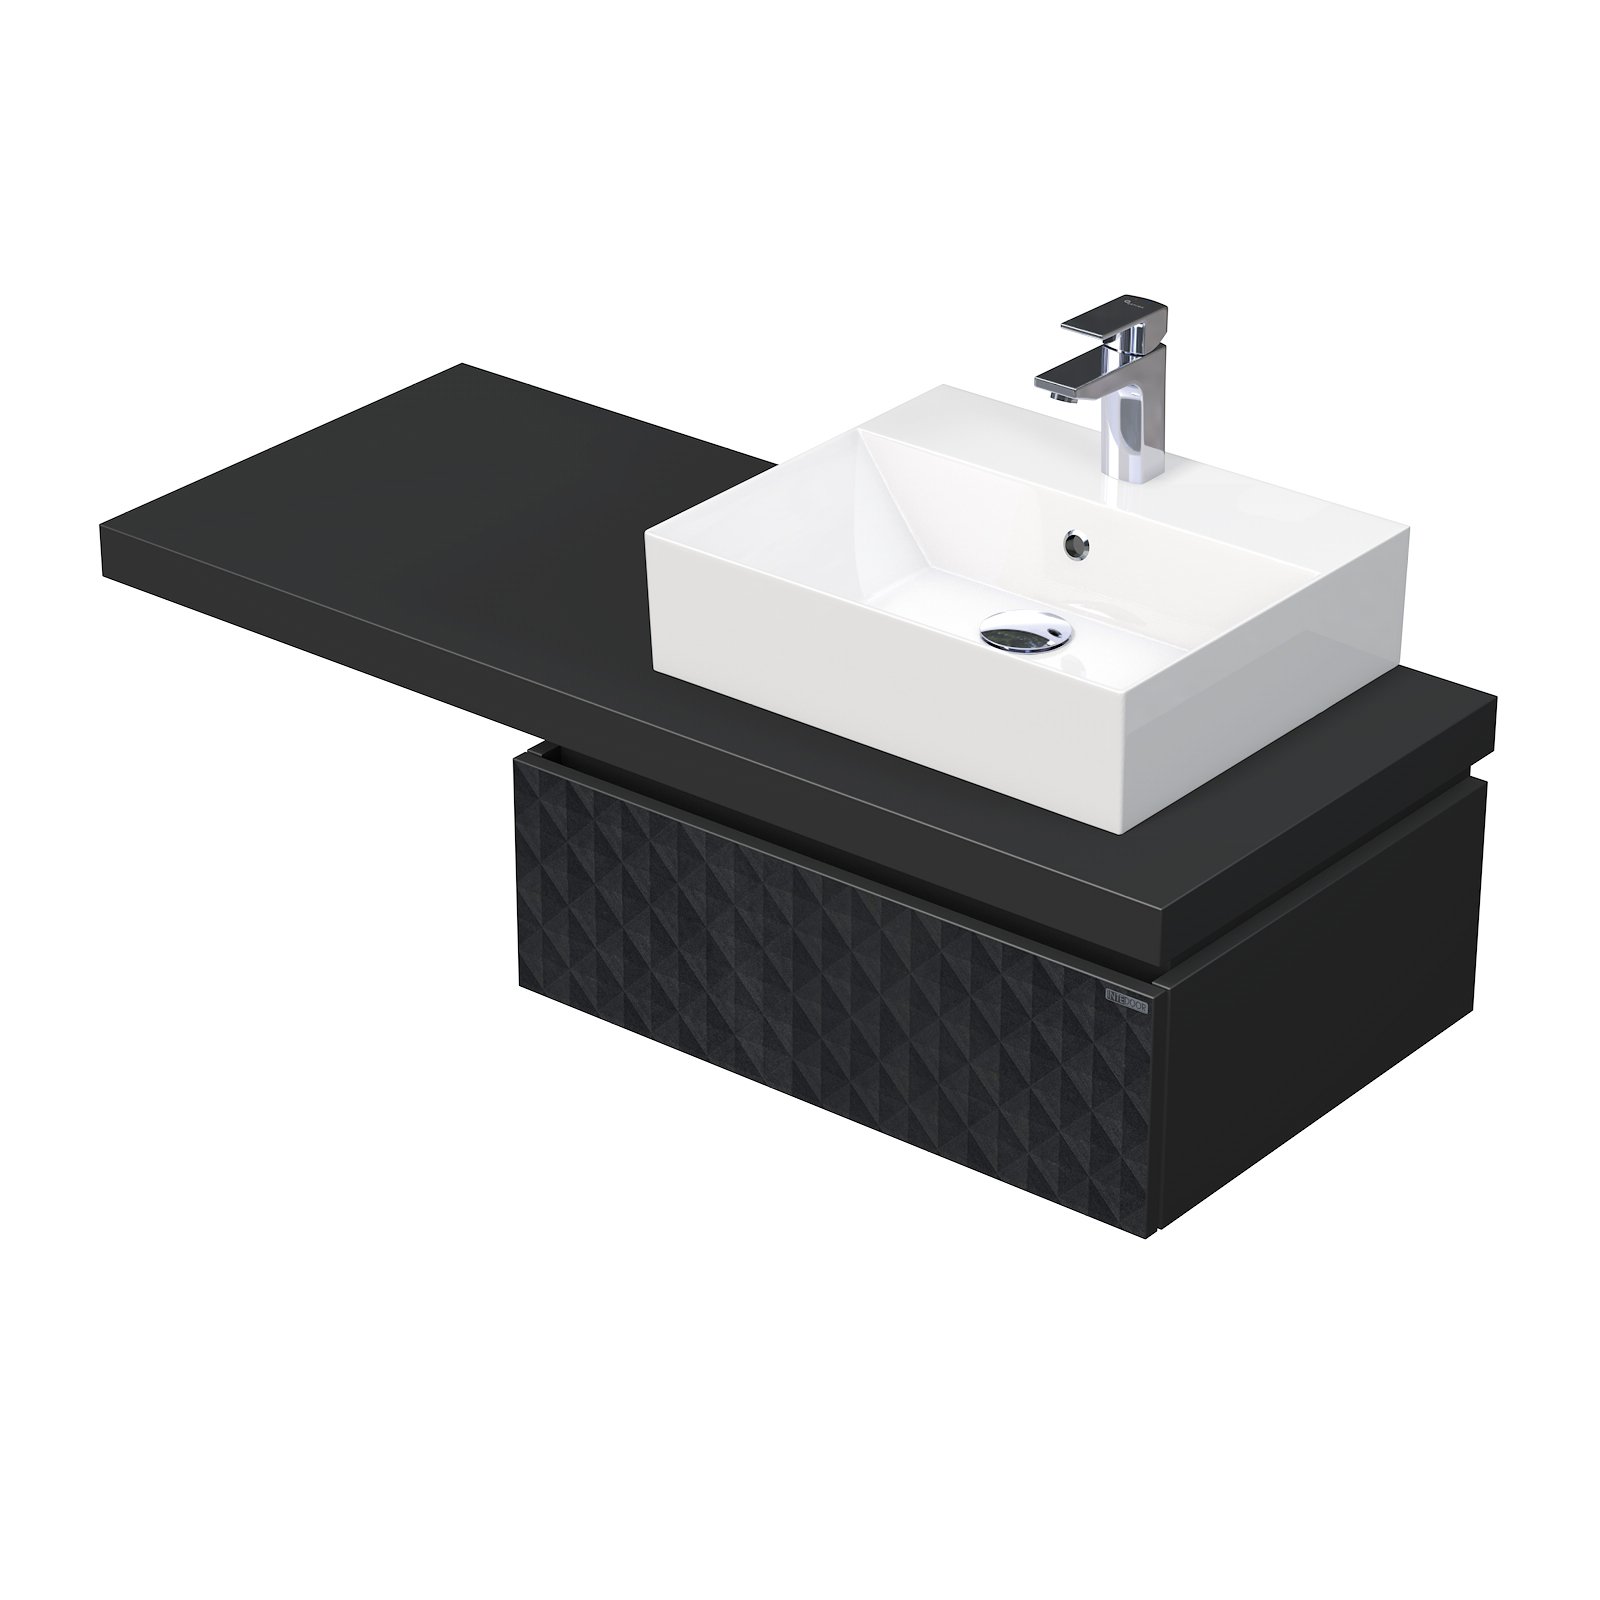 Intedoor Desk 3D - skříňka 120 cm s umyvadlem na desku vpravo, 1 zásuvka, závěsná, černá DE 54 3D 120 P STORM 1Z U129